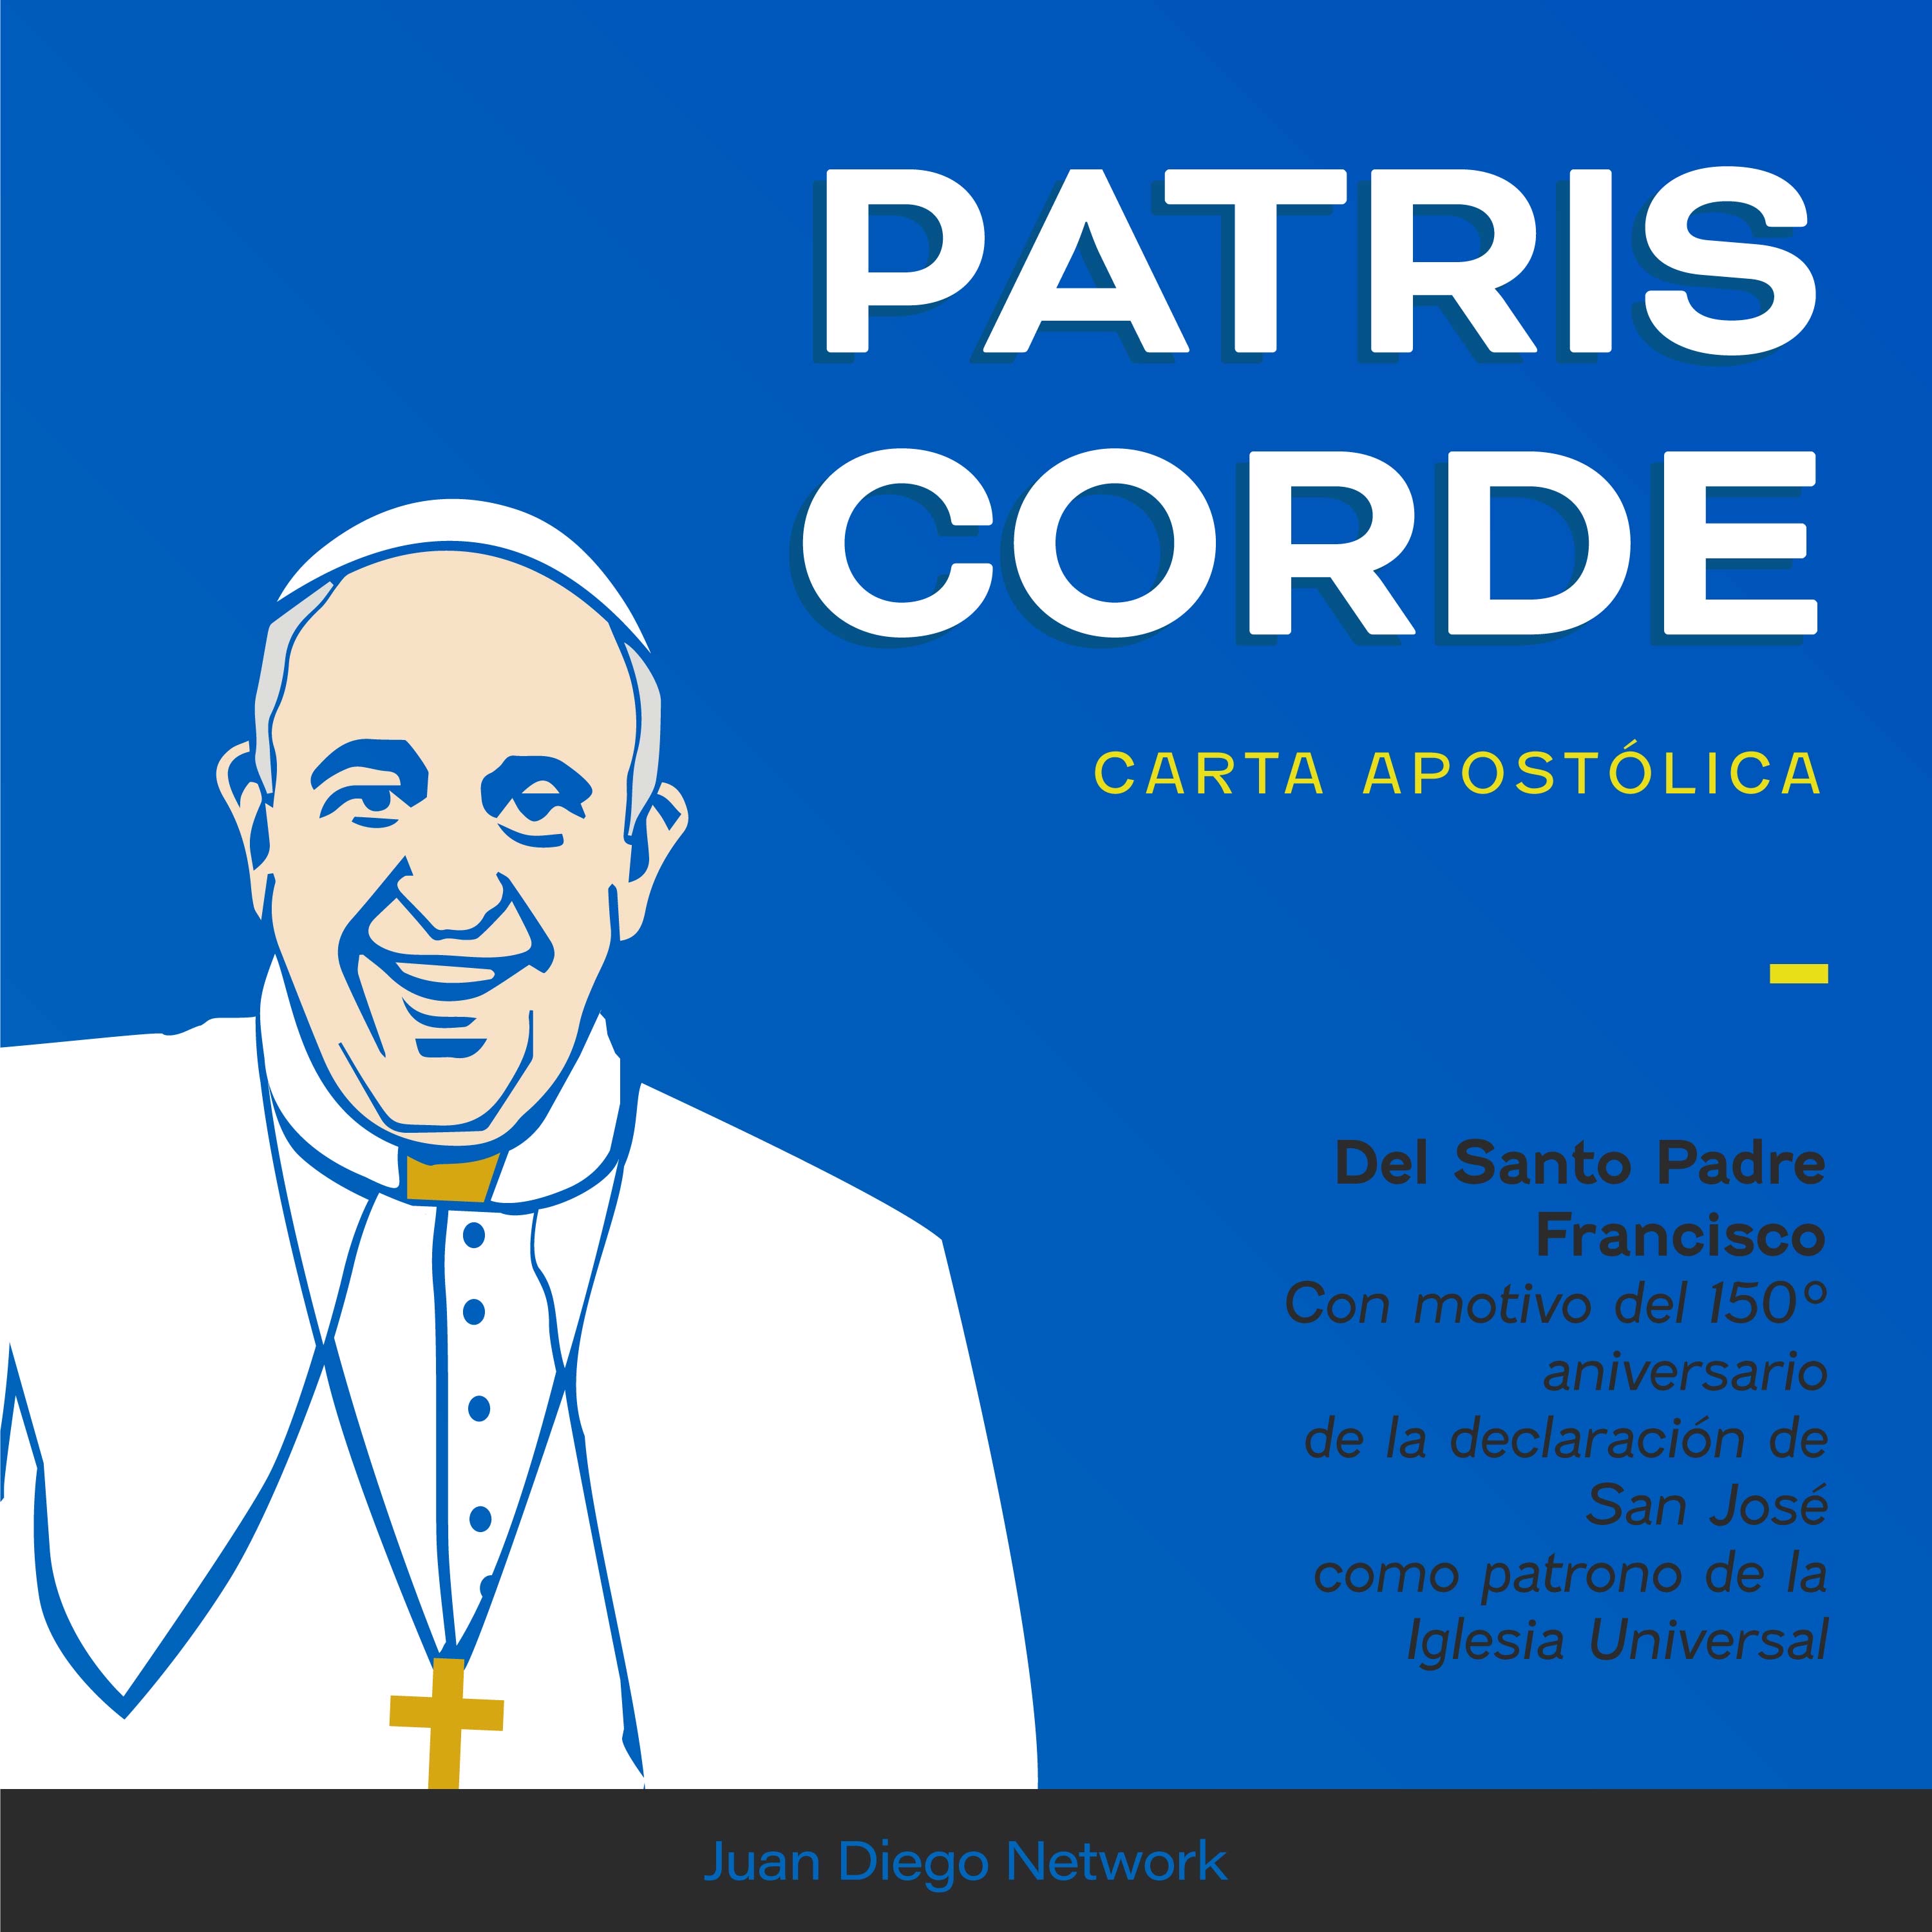 Artwork for podcast Patris Corde +Carta Apostólica del Santo Padre con motivo del 150 Aniversario de la declaración de San José como patrono de la Iglesia universal+